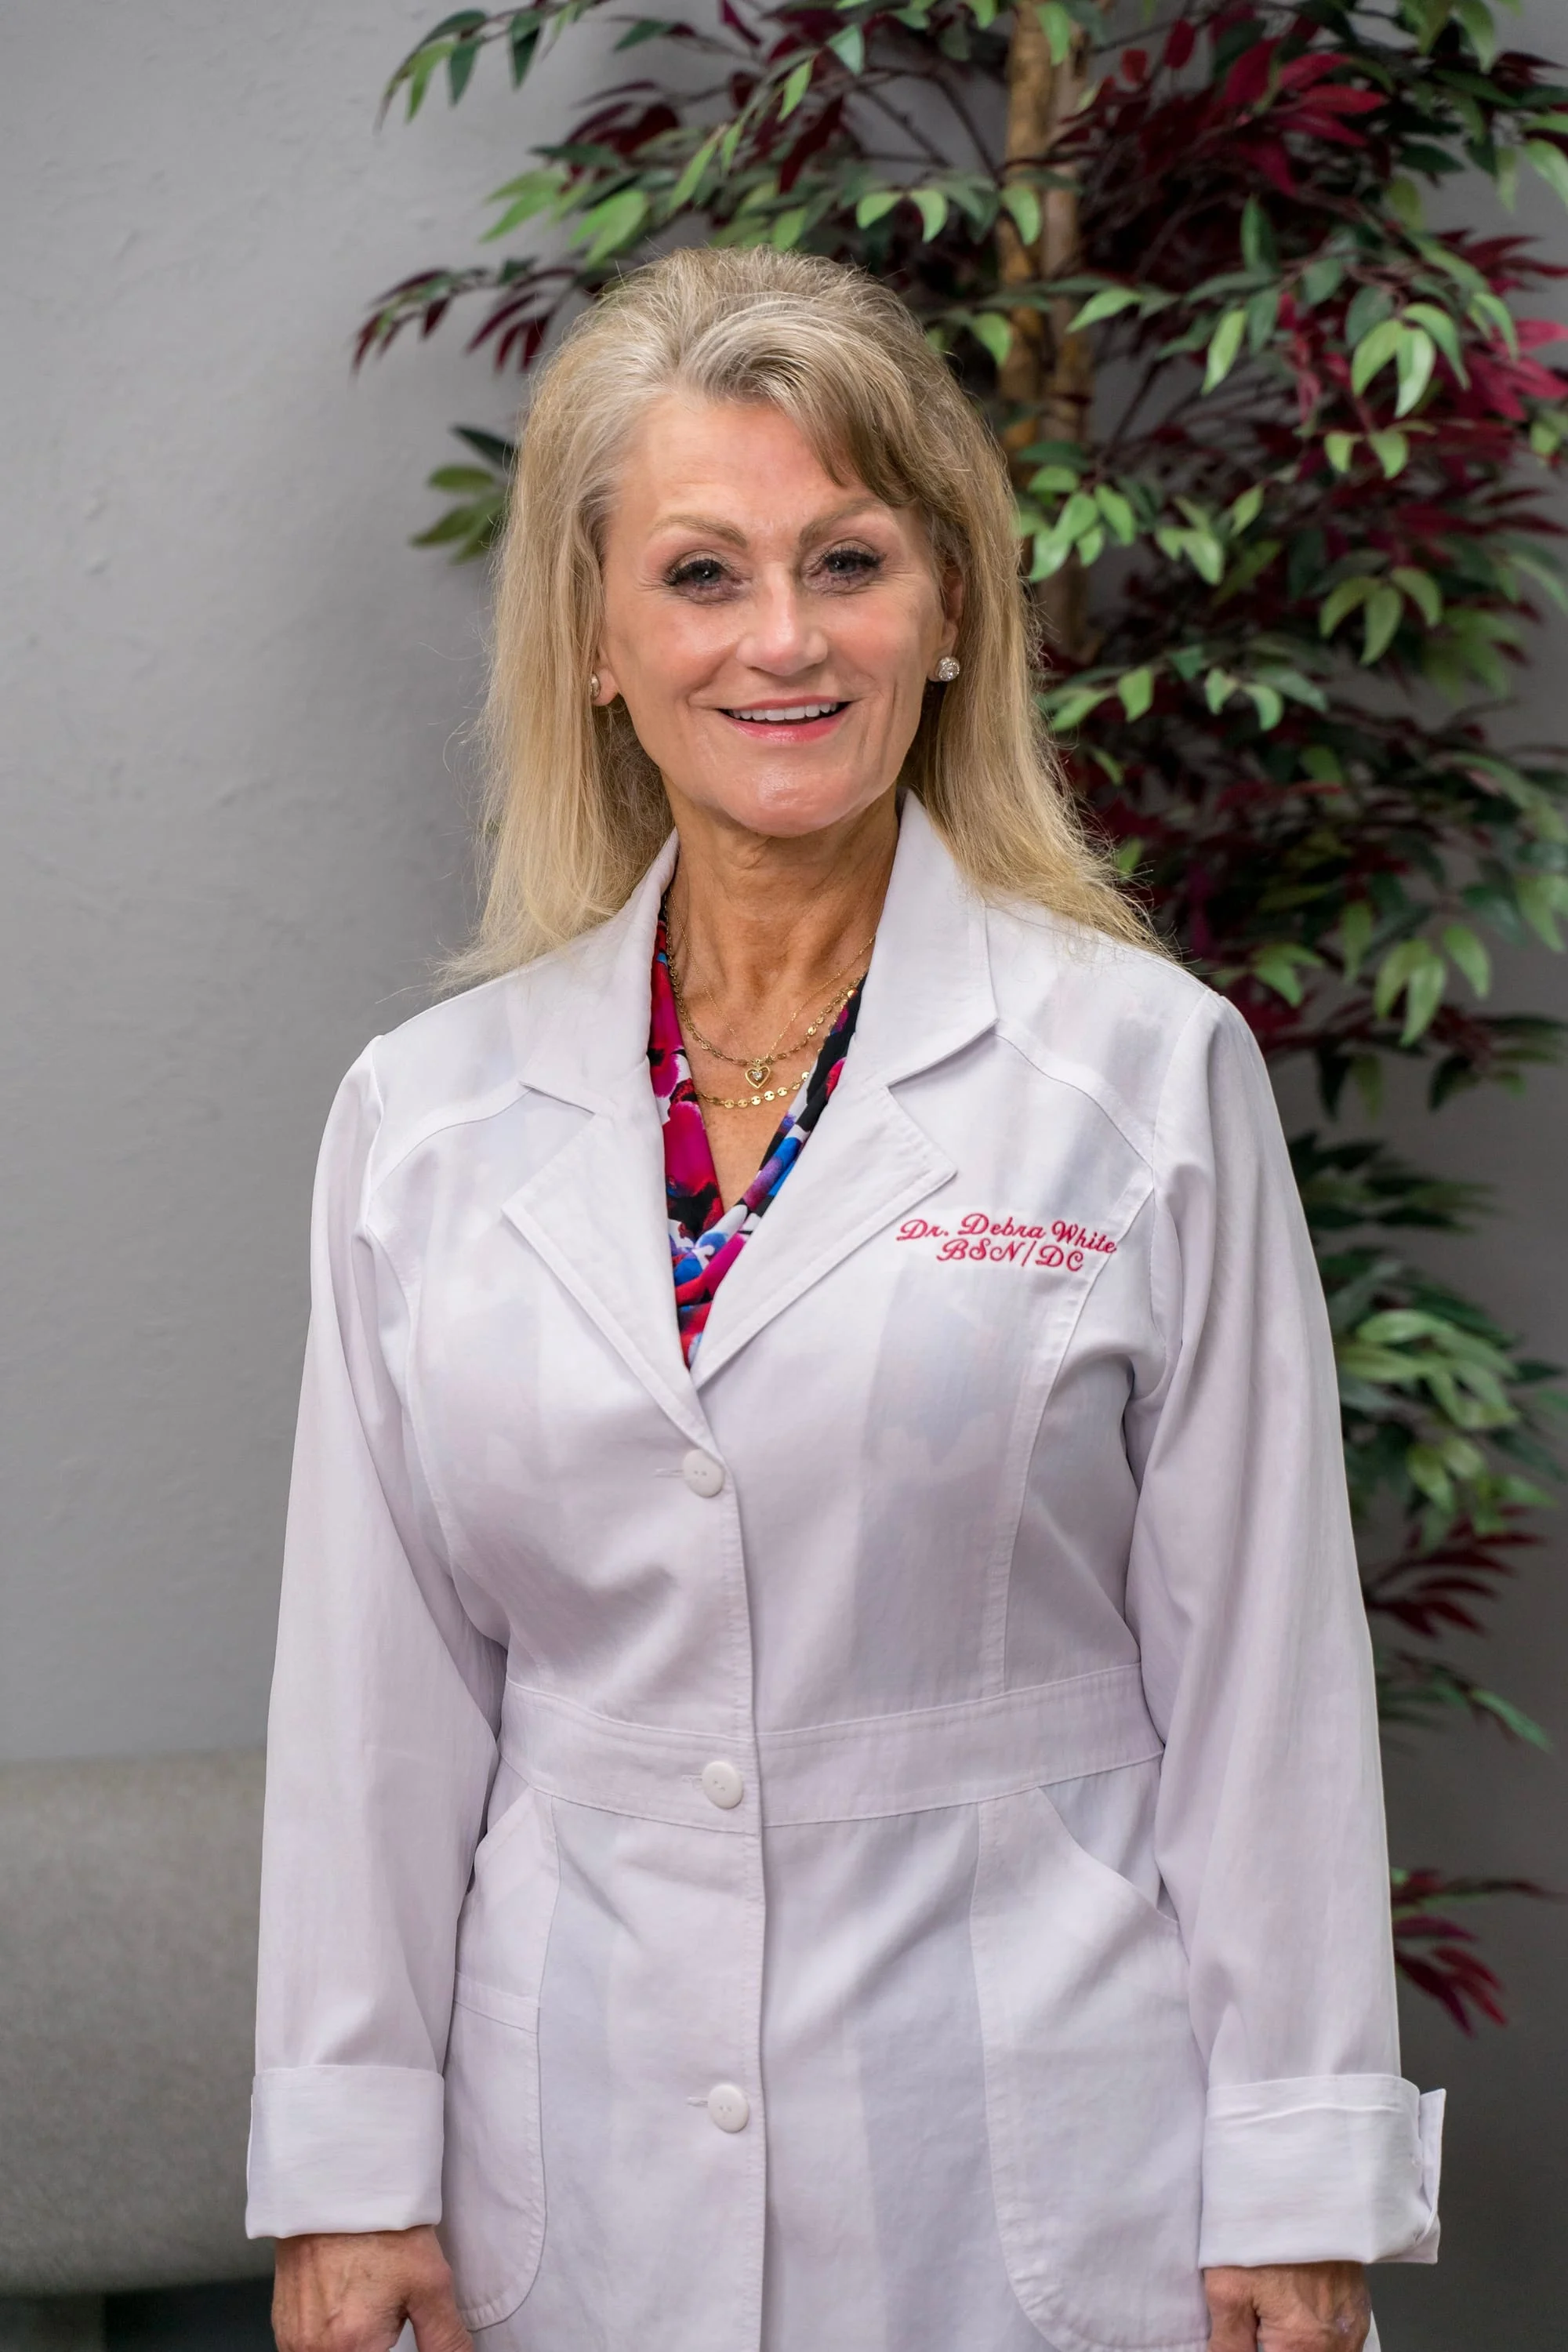 Meet Dr. Debra White